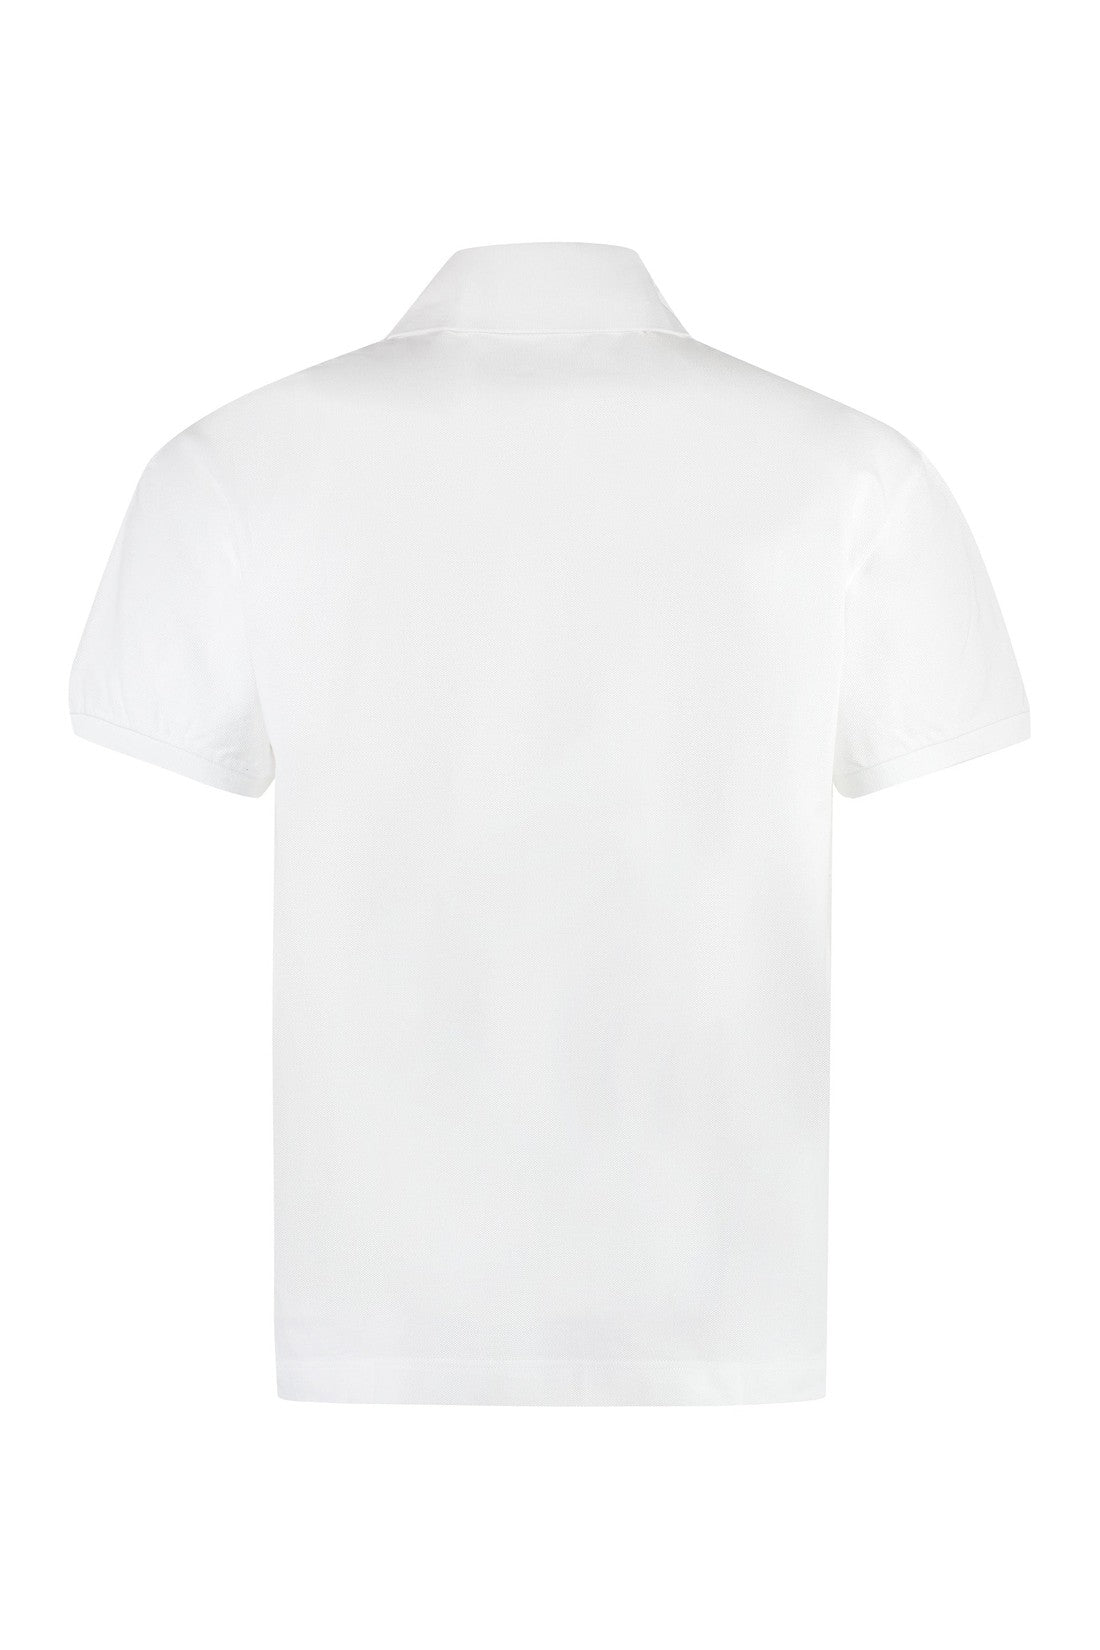 Palm Angels-OUTLET-SALE-Cotton-piqué polo shirt-ARCHIVIST